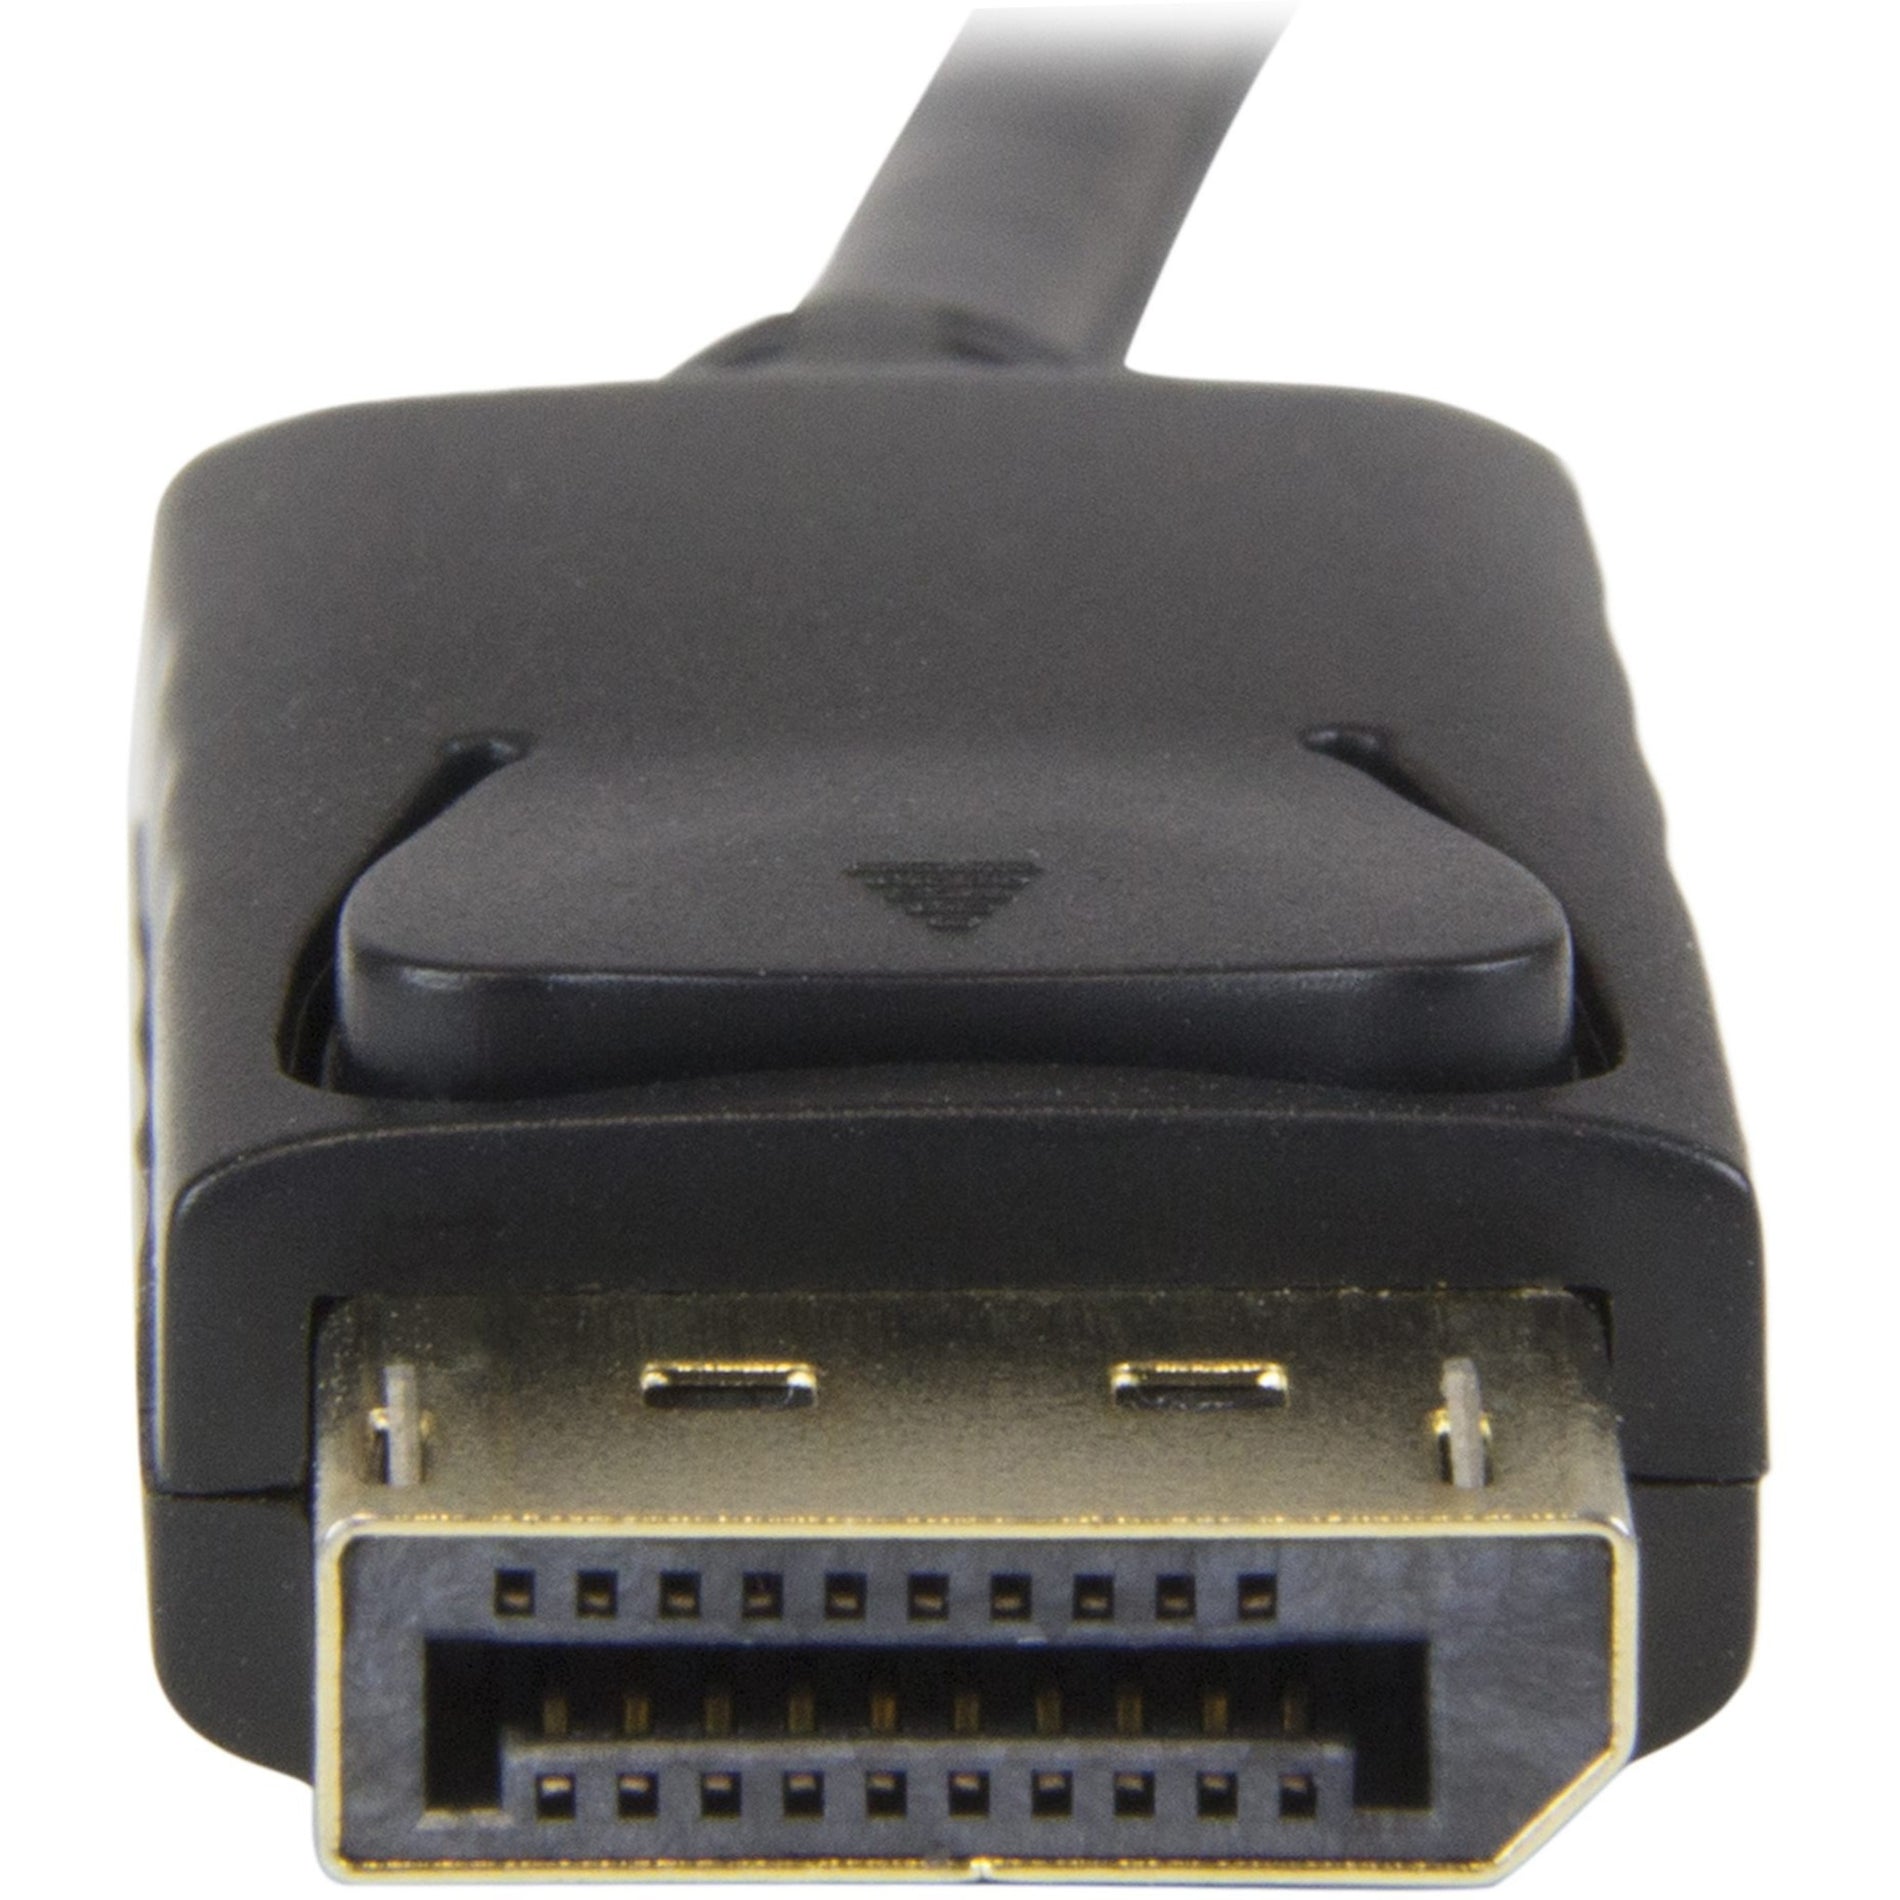 StarTech.com كابل تحويل DisplayPort إلى HDMI - 6 أقدام (2 م) - 4K ، القضاء على الفوضى من خلال توصيل جهاز الكمبيوتر مباشرة بشاشة HDMI